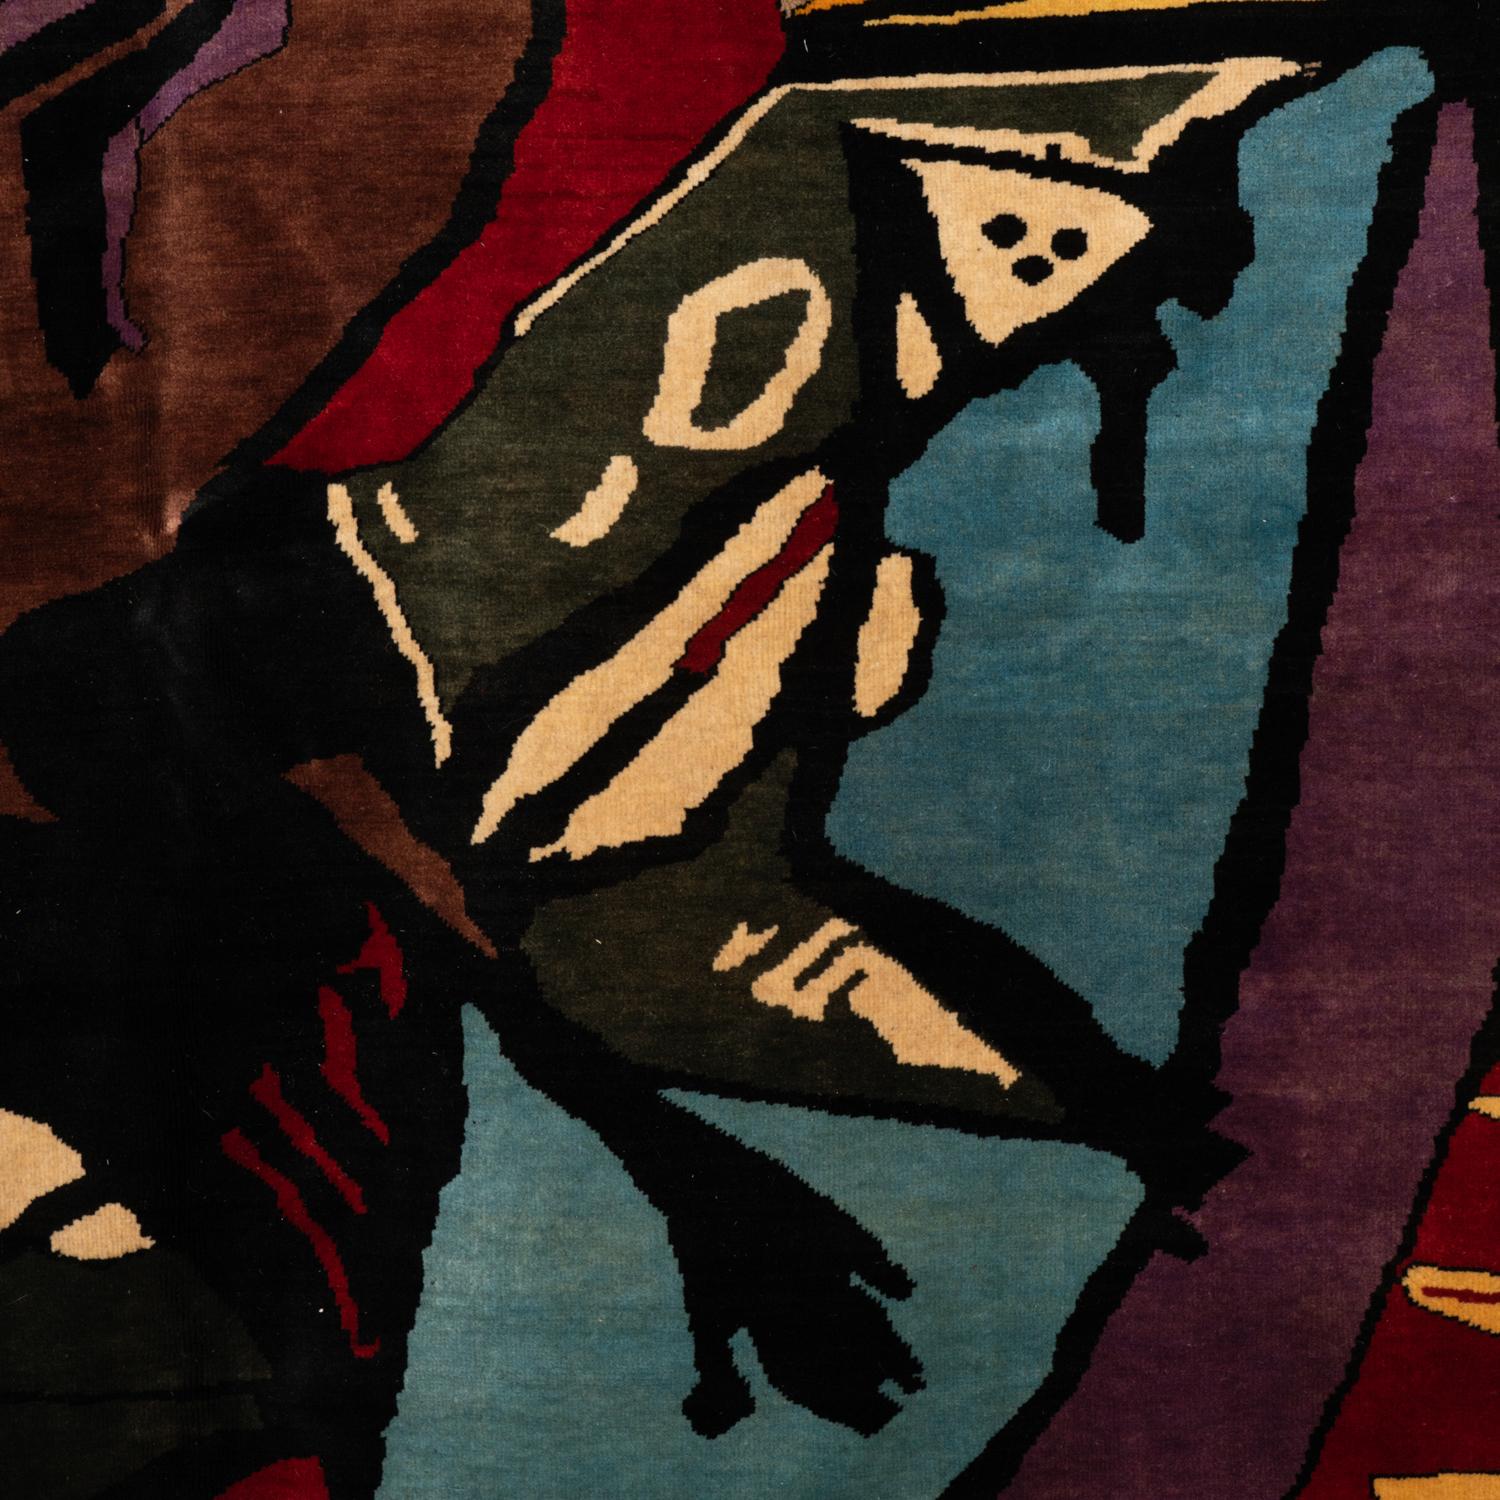 Teppich oder Wandteppich, inspiriert von Francis Picabia, in warmen Farben. Handgeknüpft aus Merinowolle.

Zeitgenössische Handwerkskunst.

Nummeriert 1/8. Fläche: 6.96 M2. Dichte: 974.400 Knoten.

Mit einem vom Herausgeber unterzeichneten